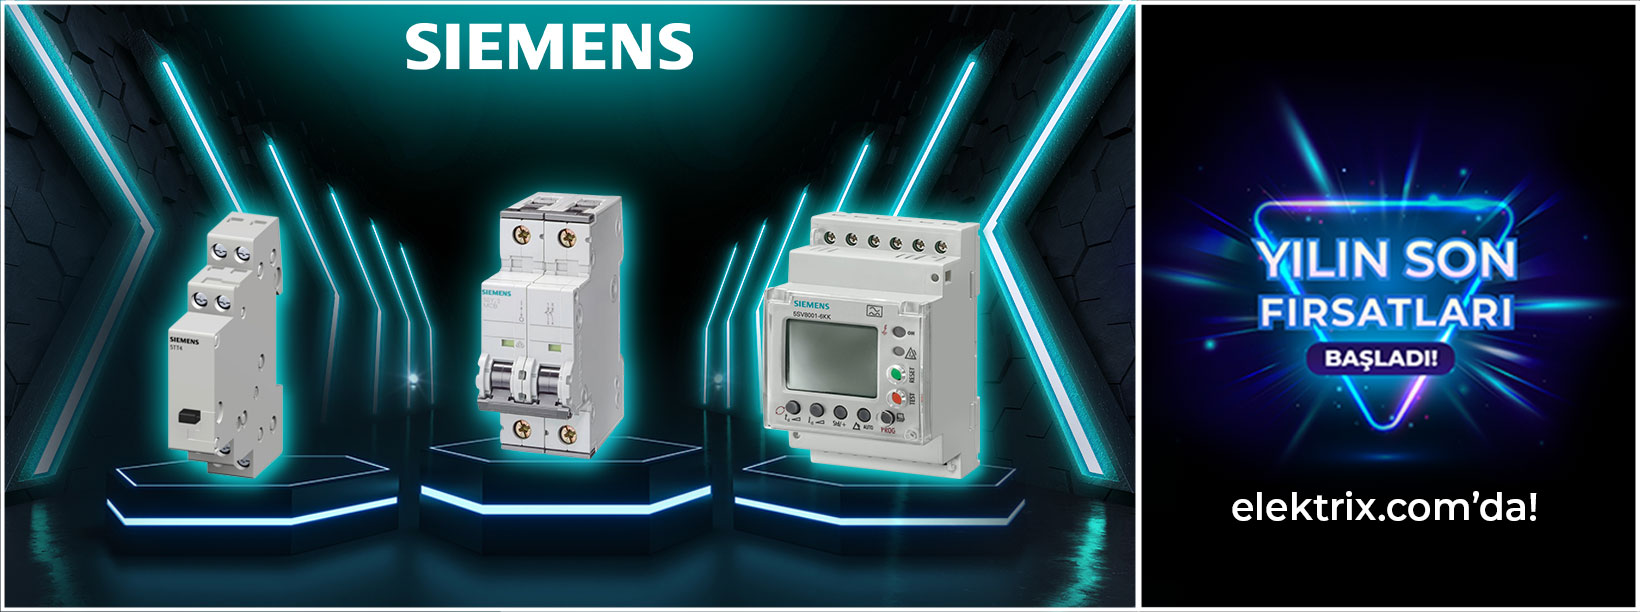 Siemens Aralık Kampanyaları